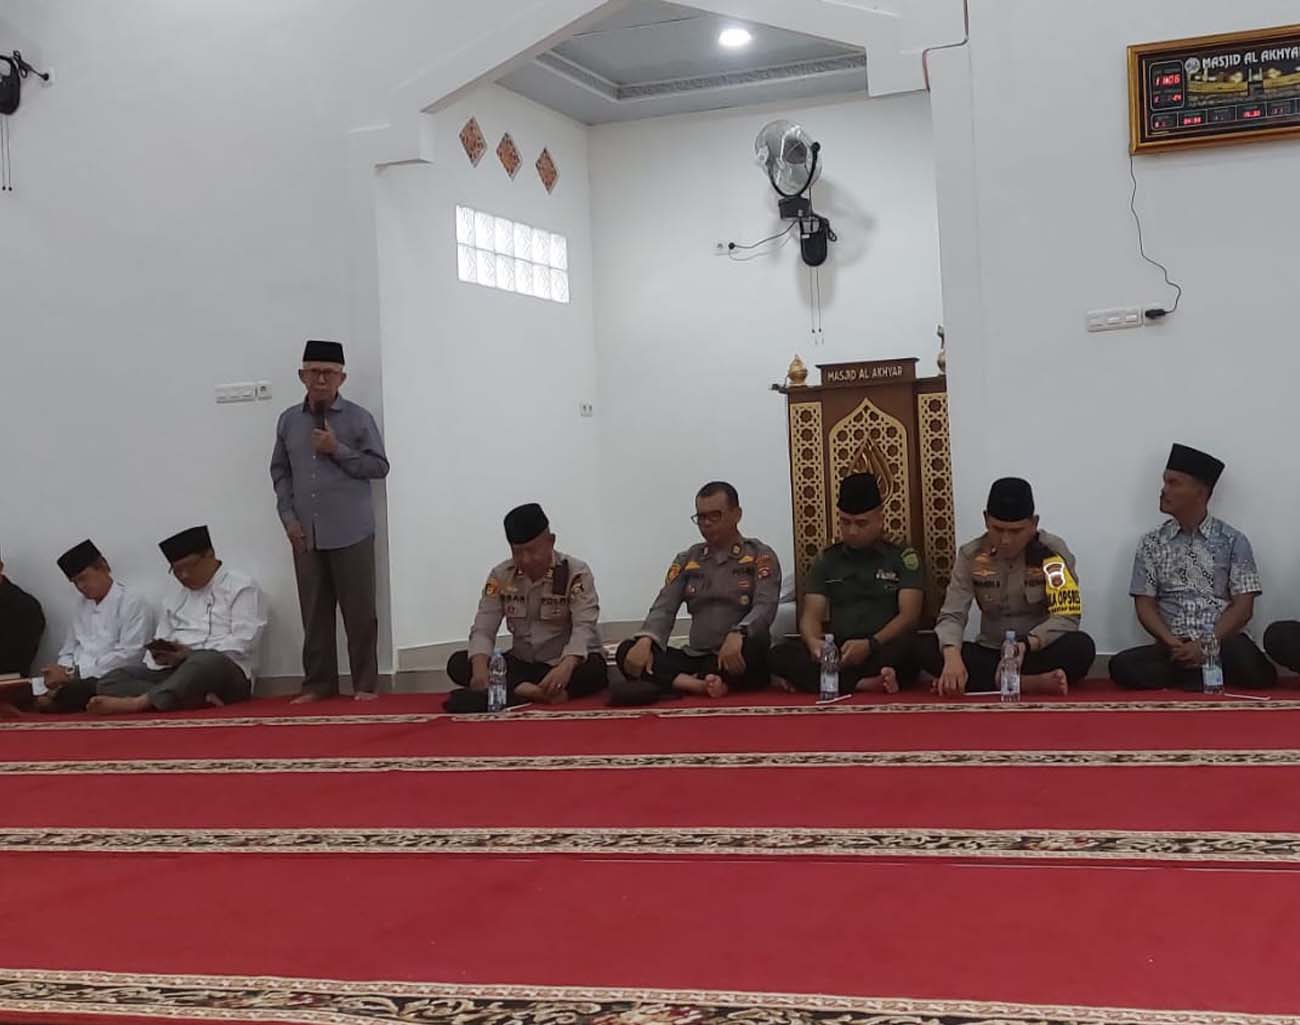 Ketua Dewan Pertimbangan MUI Lahat: Masjid Jangan Seperti Keranda, Inilah Tugas Pemuka Agama, Adat, Ulama